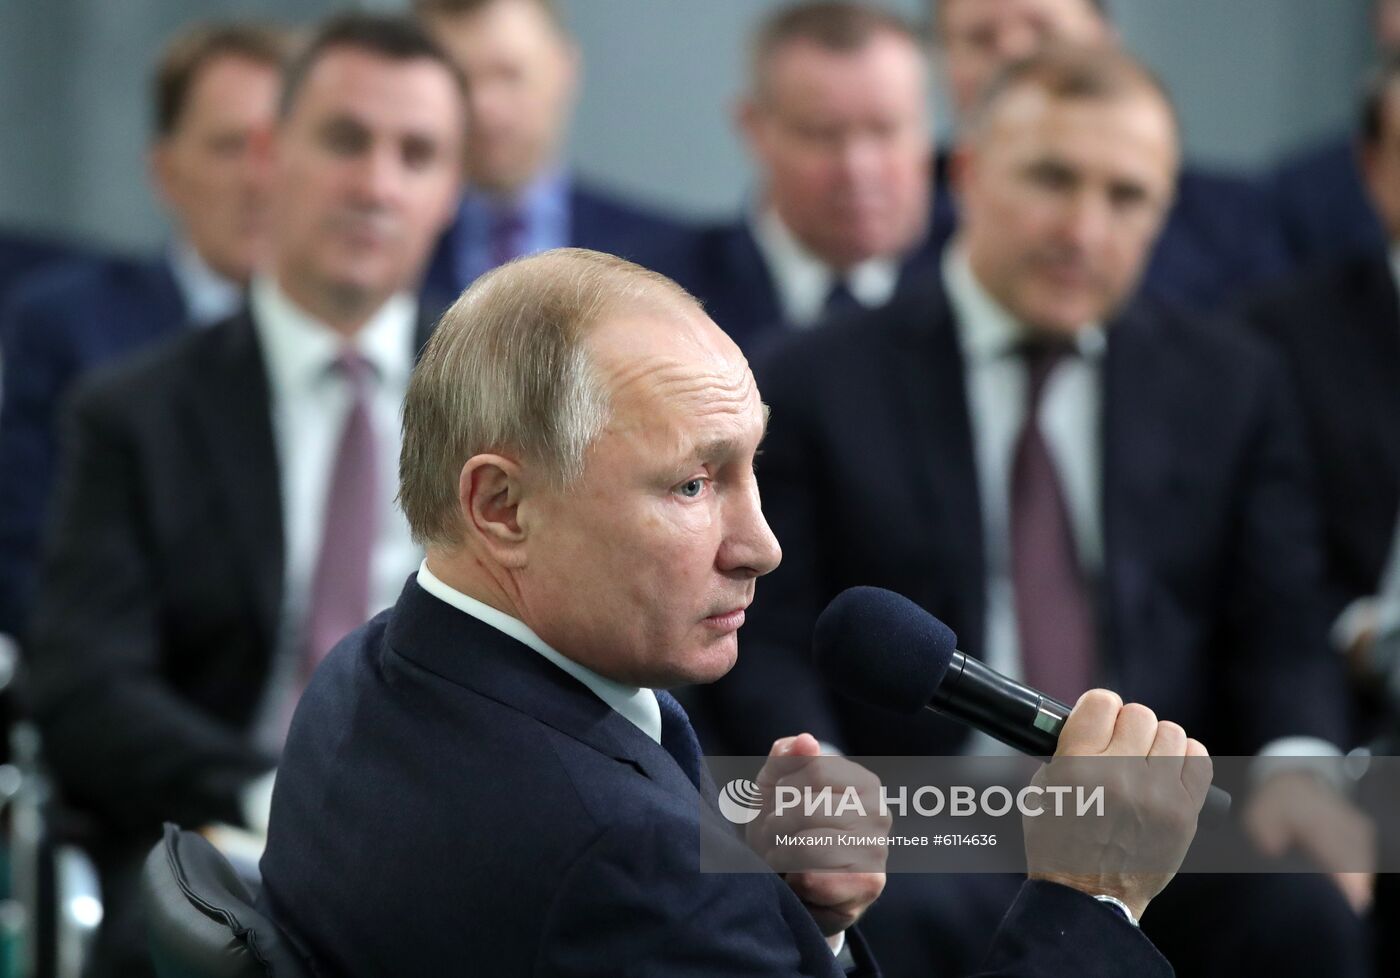 Рабочая поездка президента РФ В. Путина в Южный федеральный округ